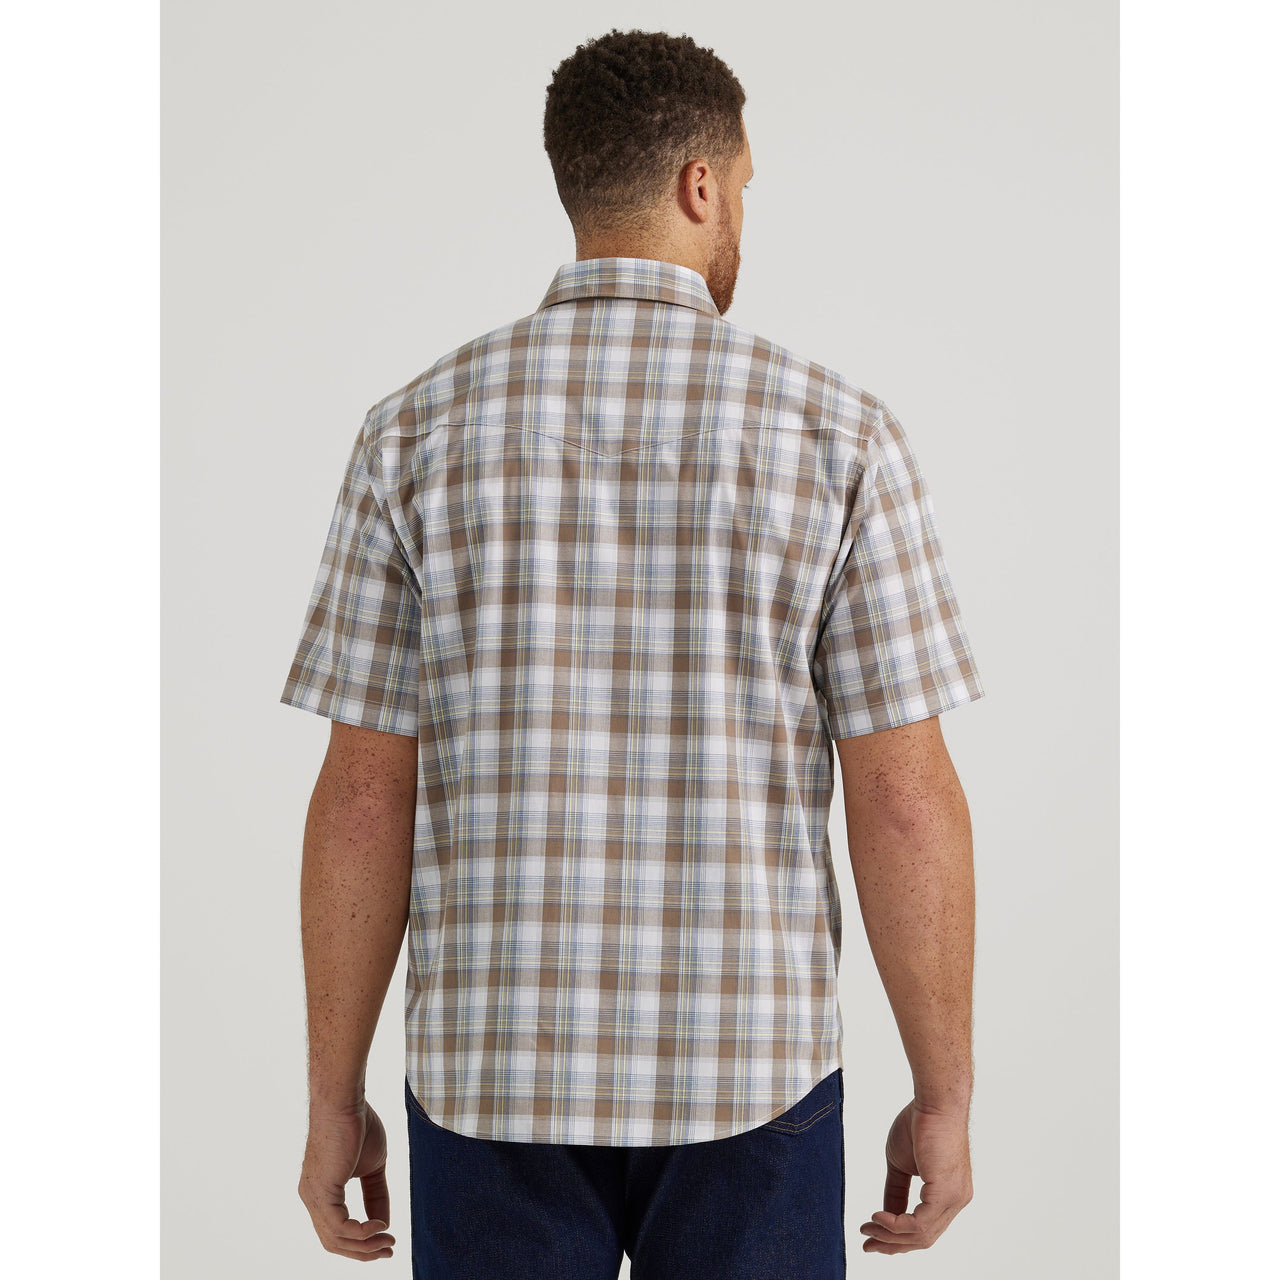 Wrangler Men's Wrinkle Resist Short Sleeve Plaid Shirt - Sand